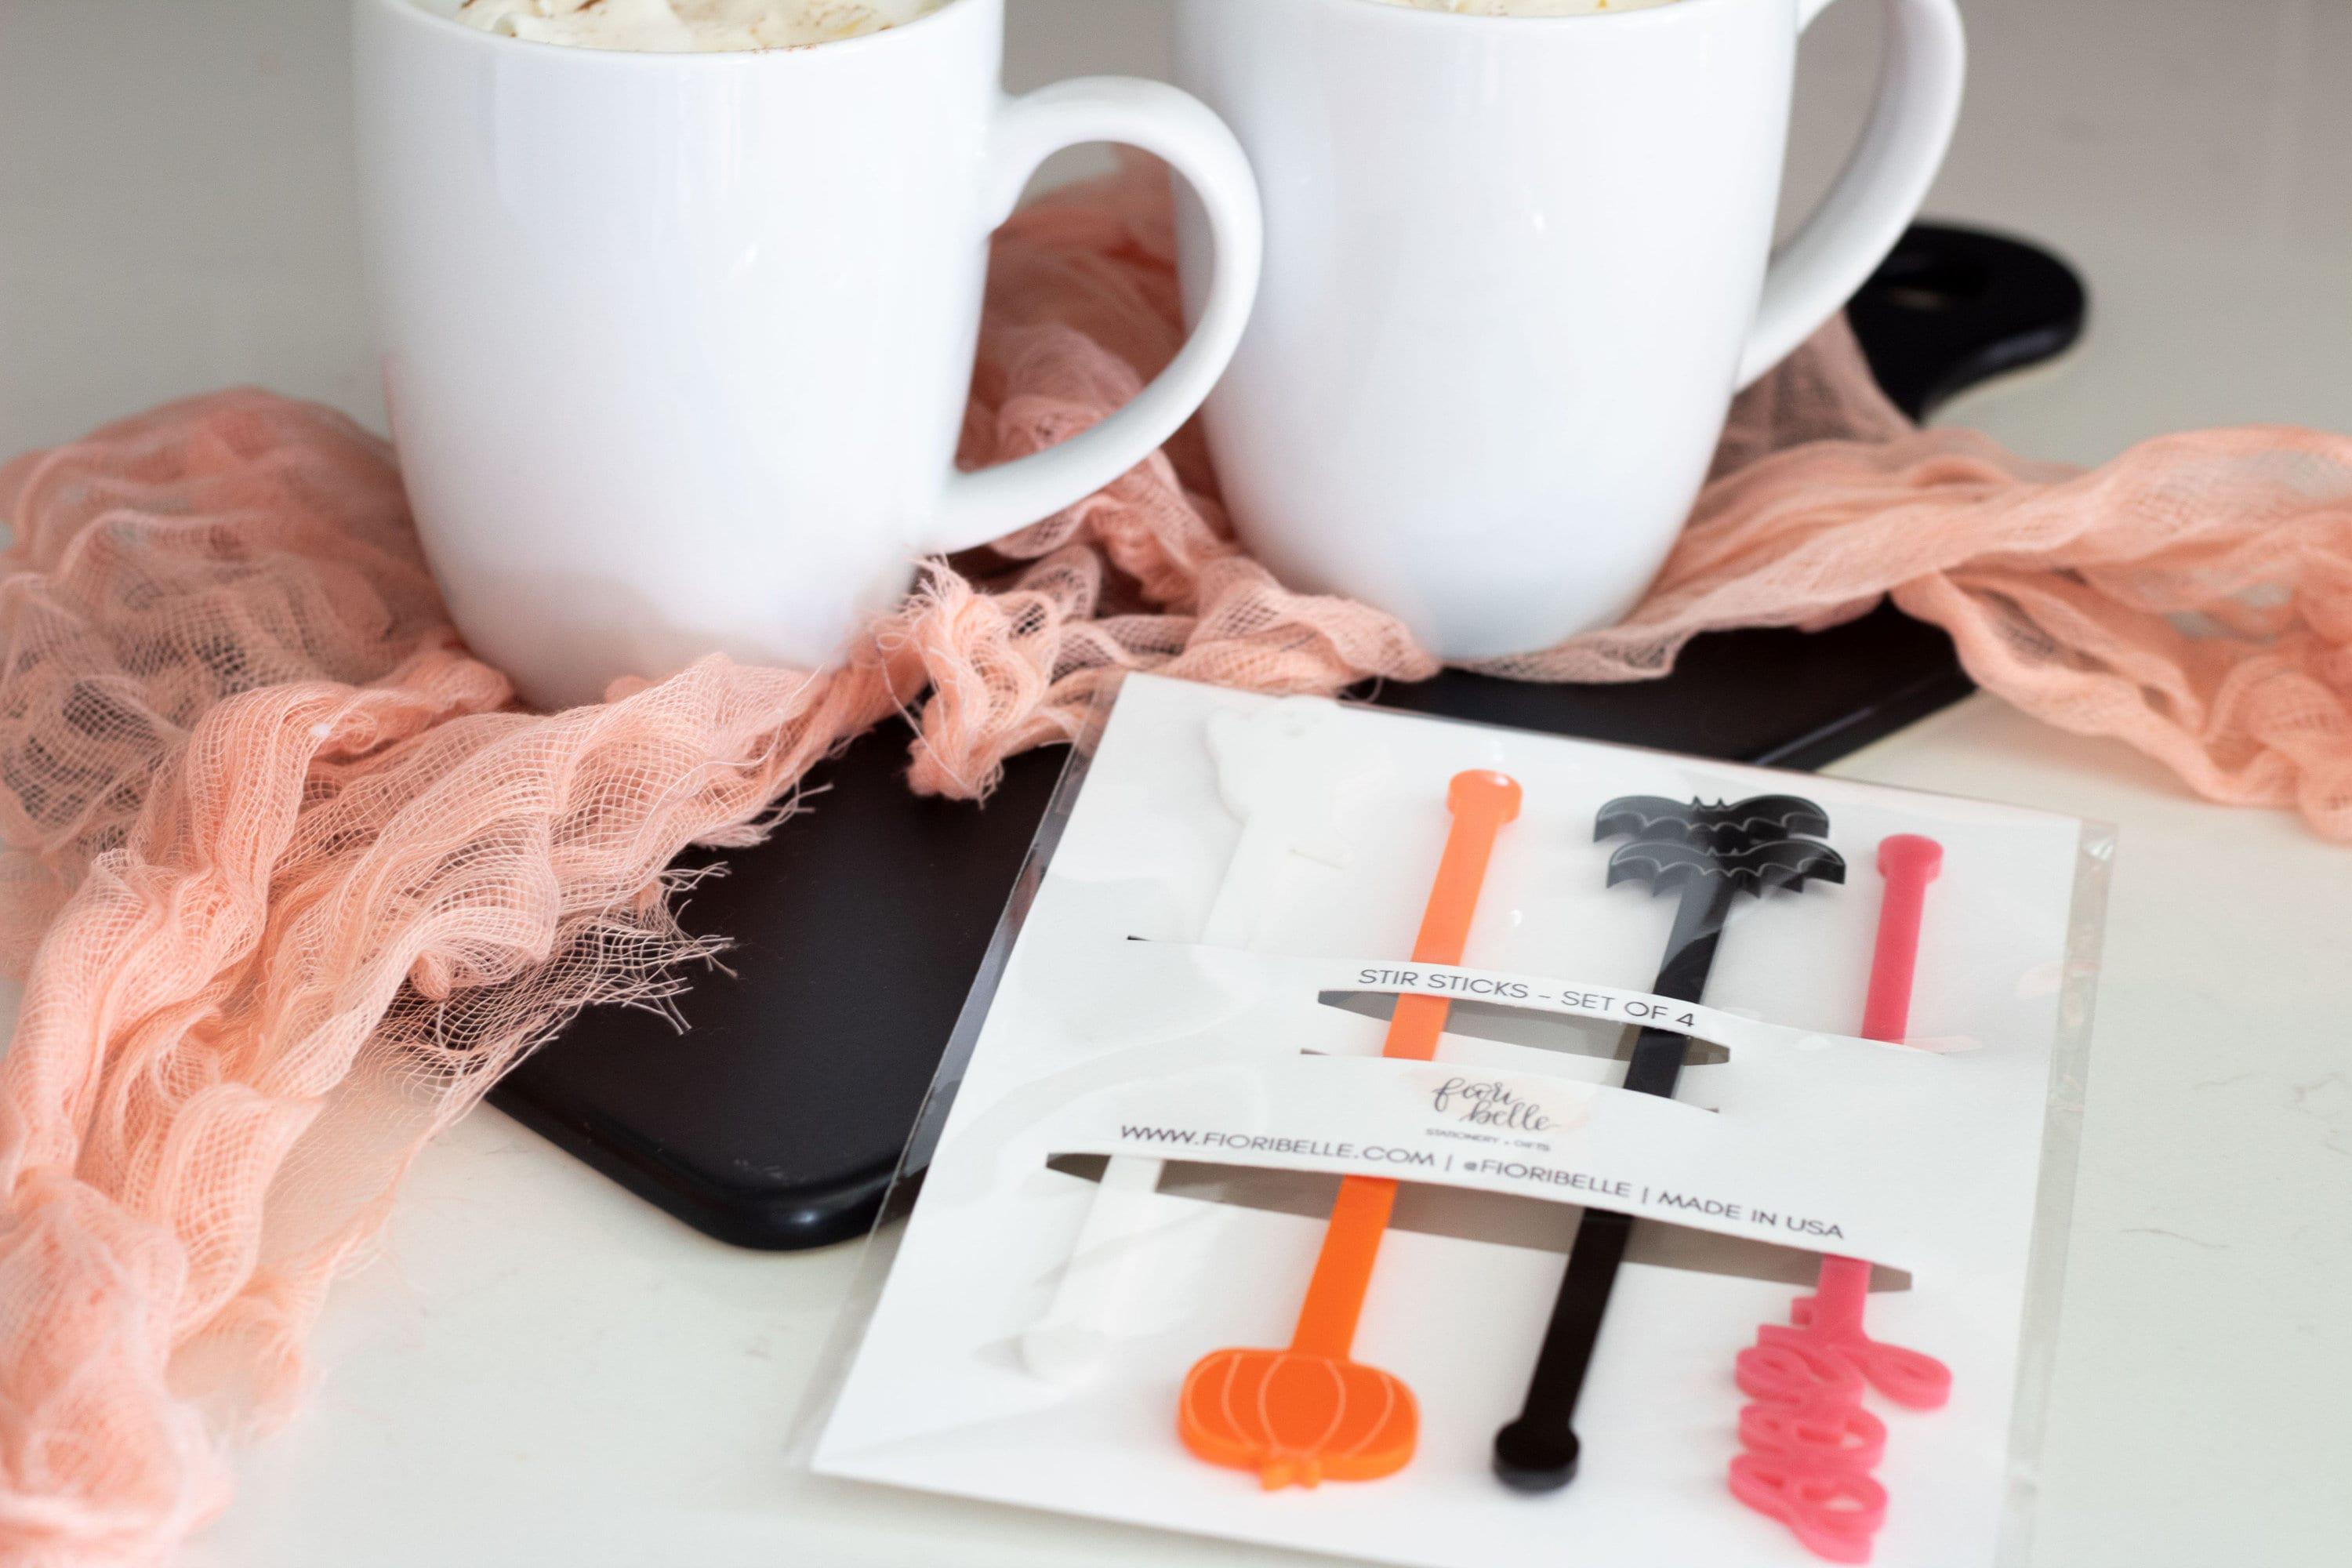 Retro Coffee Pink Acrylic Drink Stirrers Swizzle Sticks